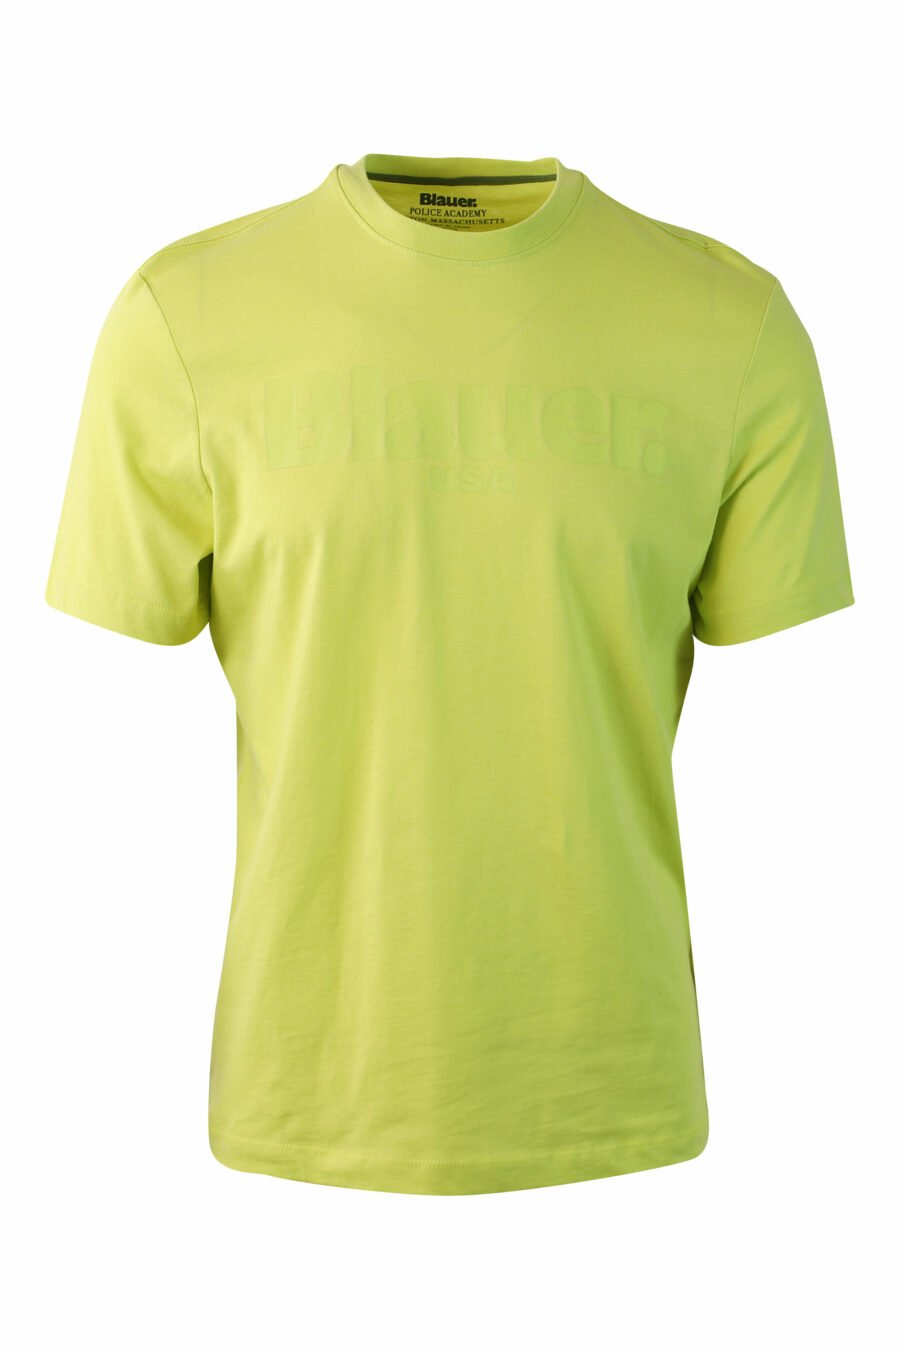 Camiseta verde lima con maxilogo monocromático - IMG 0073